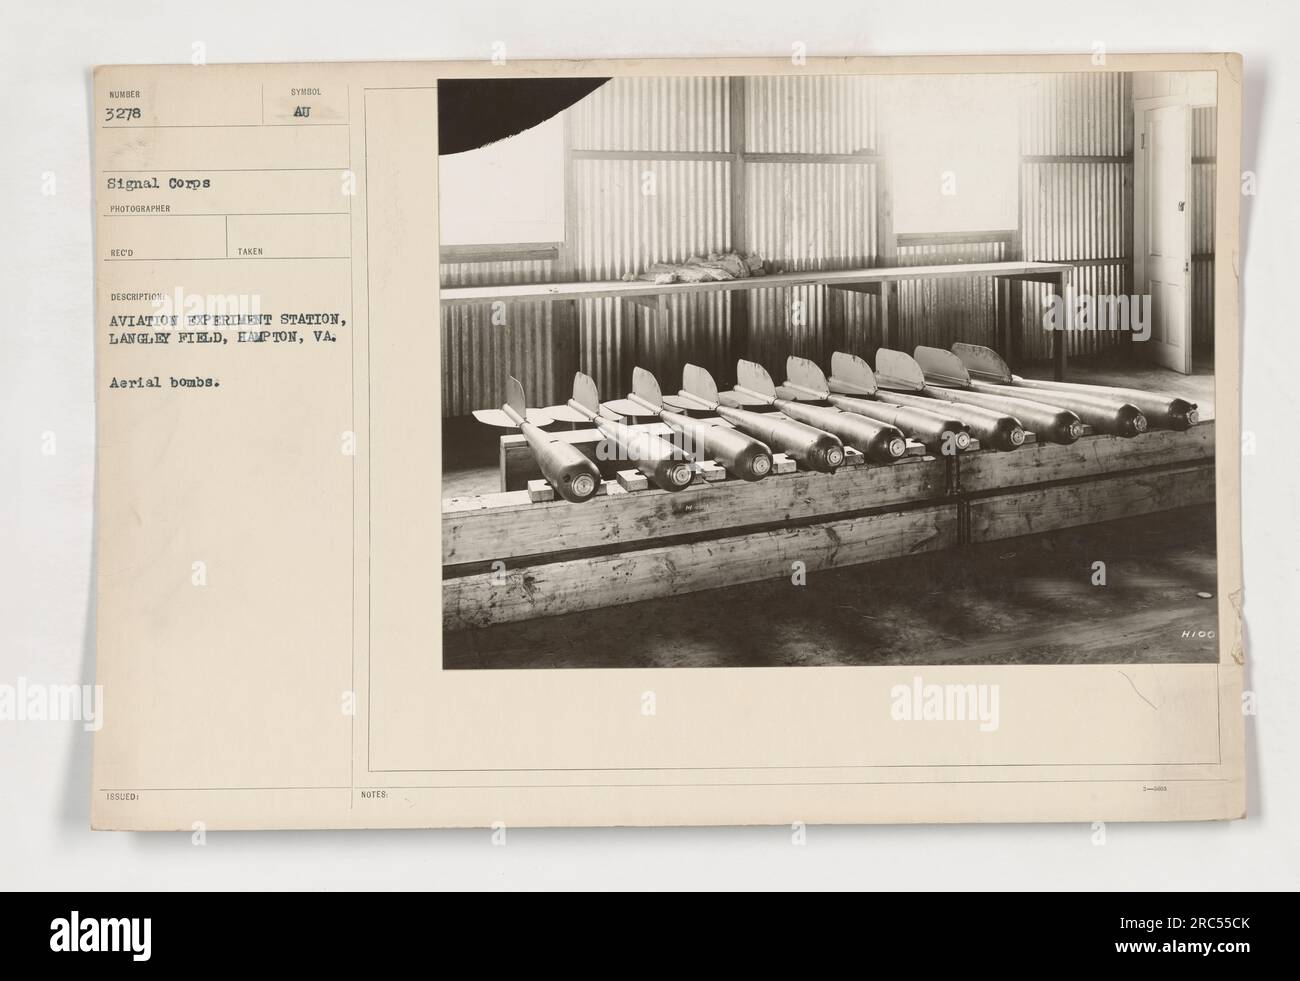 Dieses Schwarz-Weiß-Foto (111-SC-3278) zeigt die Szene an der Aviation Experiment Station in Langley Field, Hampton, VA während des Ersten Weltkriegs. Das Bild zeigt eine Sammlung von Luftbomben. Der Fotograf merkt an, dass weitere Details ausgeblendet sind (HINWEISE HIDD). Stockfoto